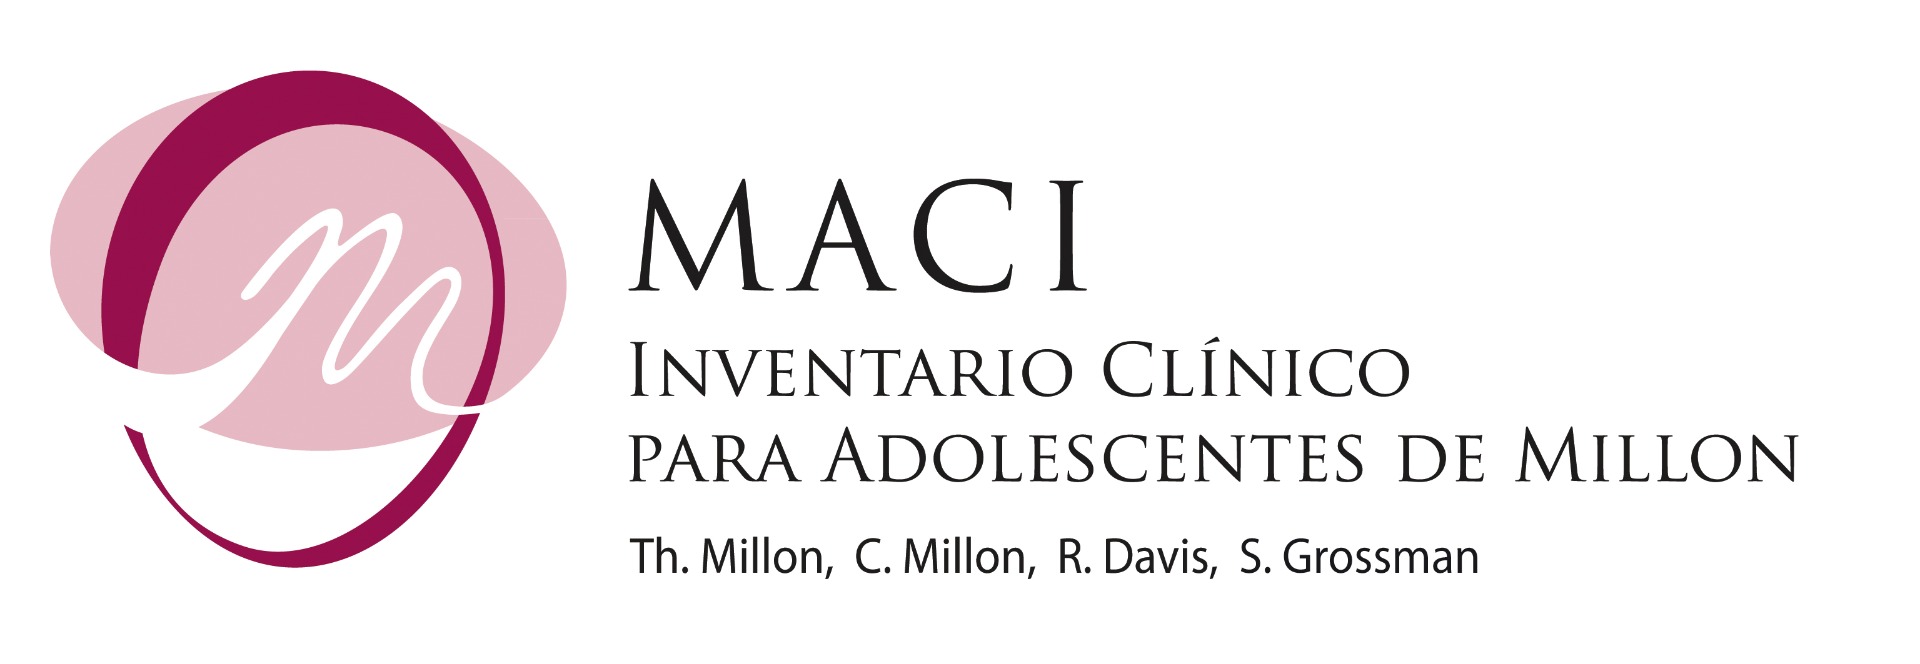 MACI_logo